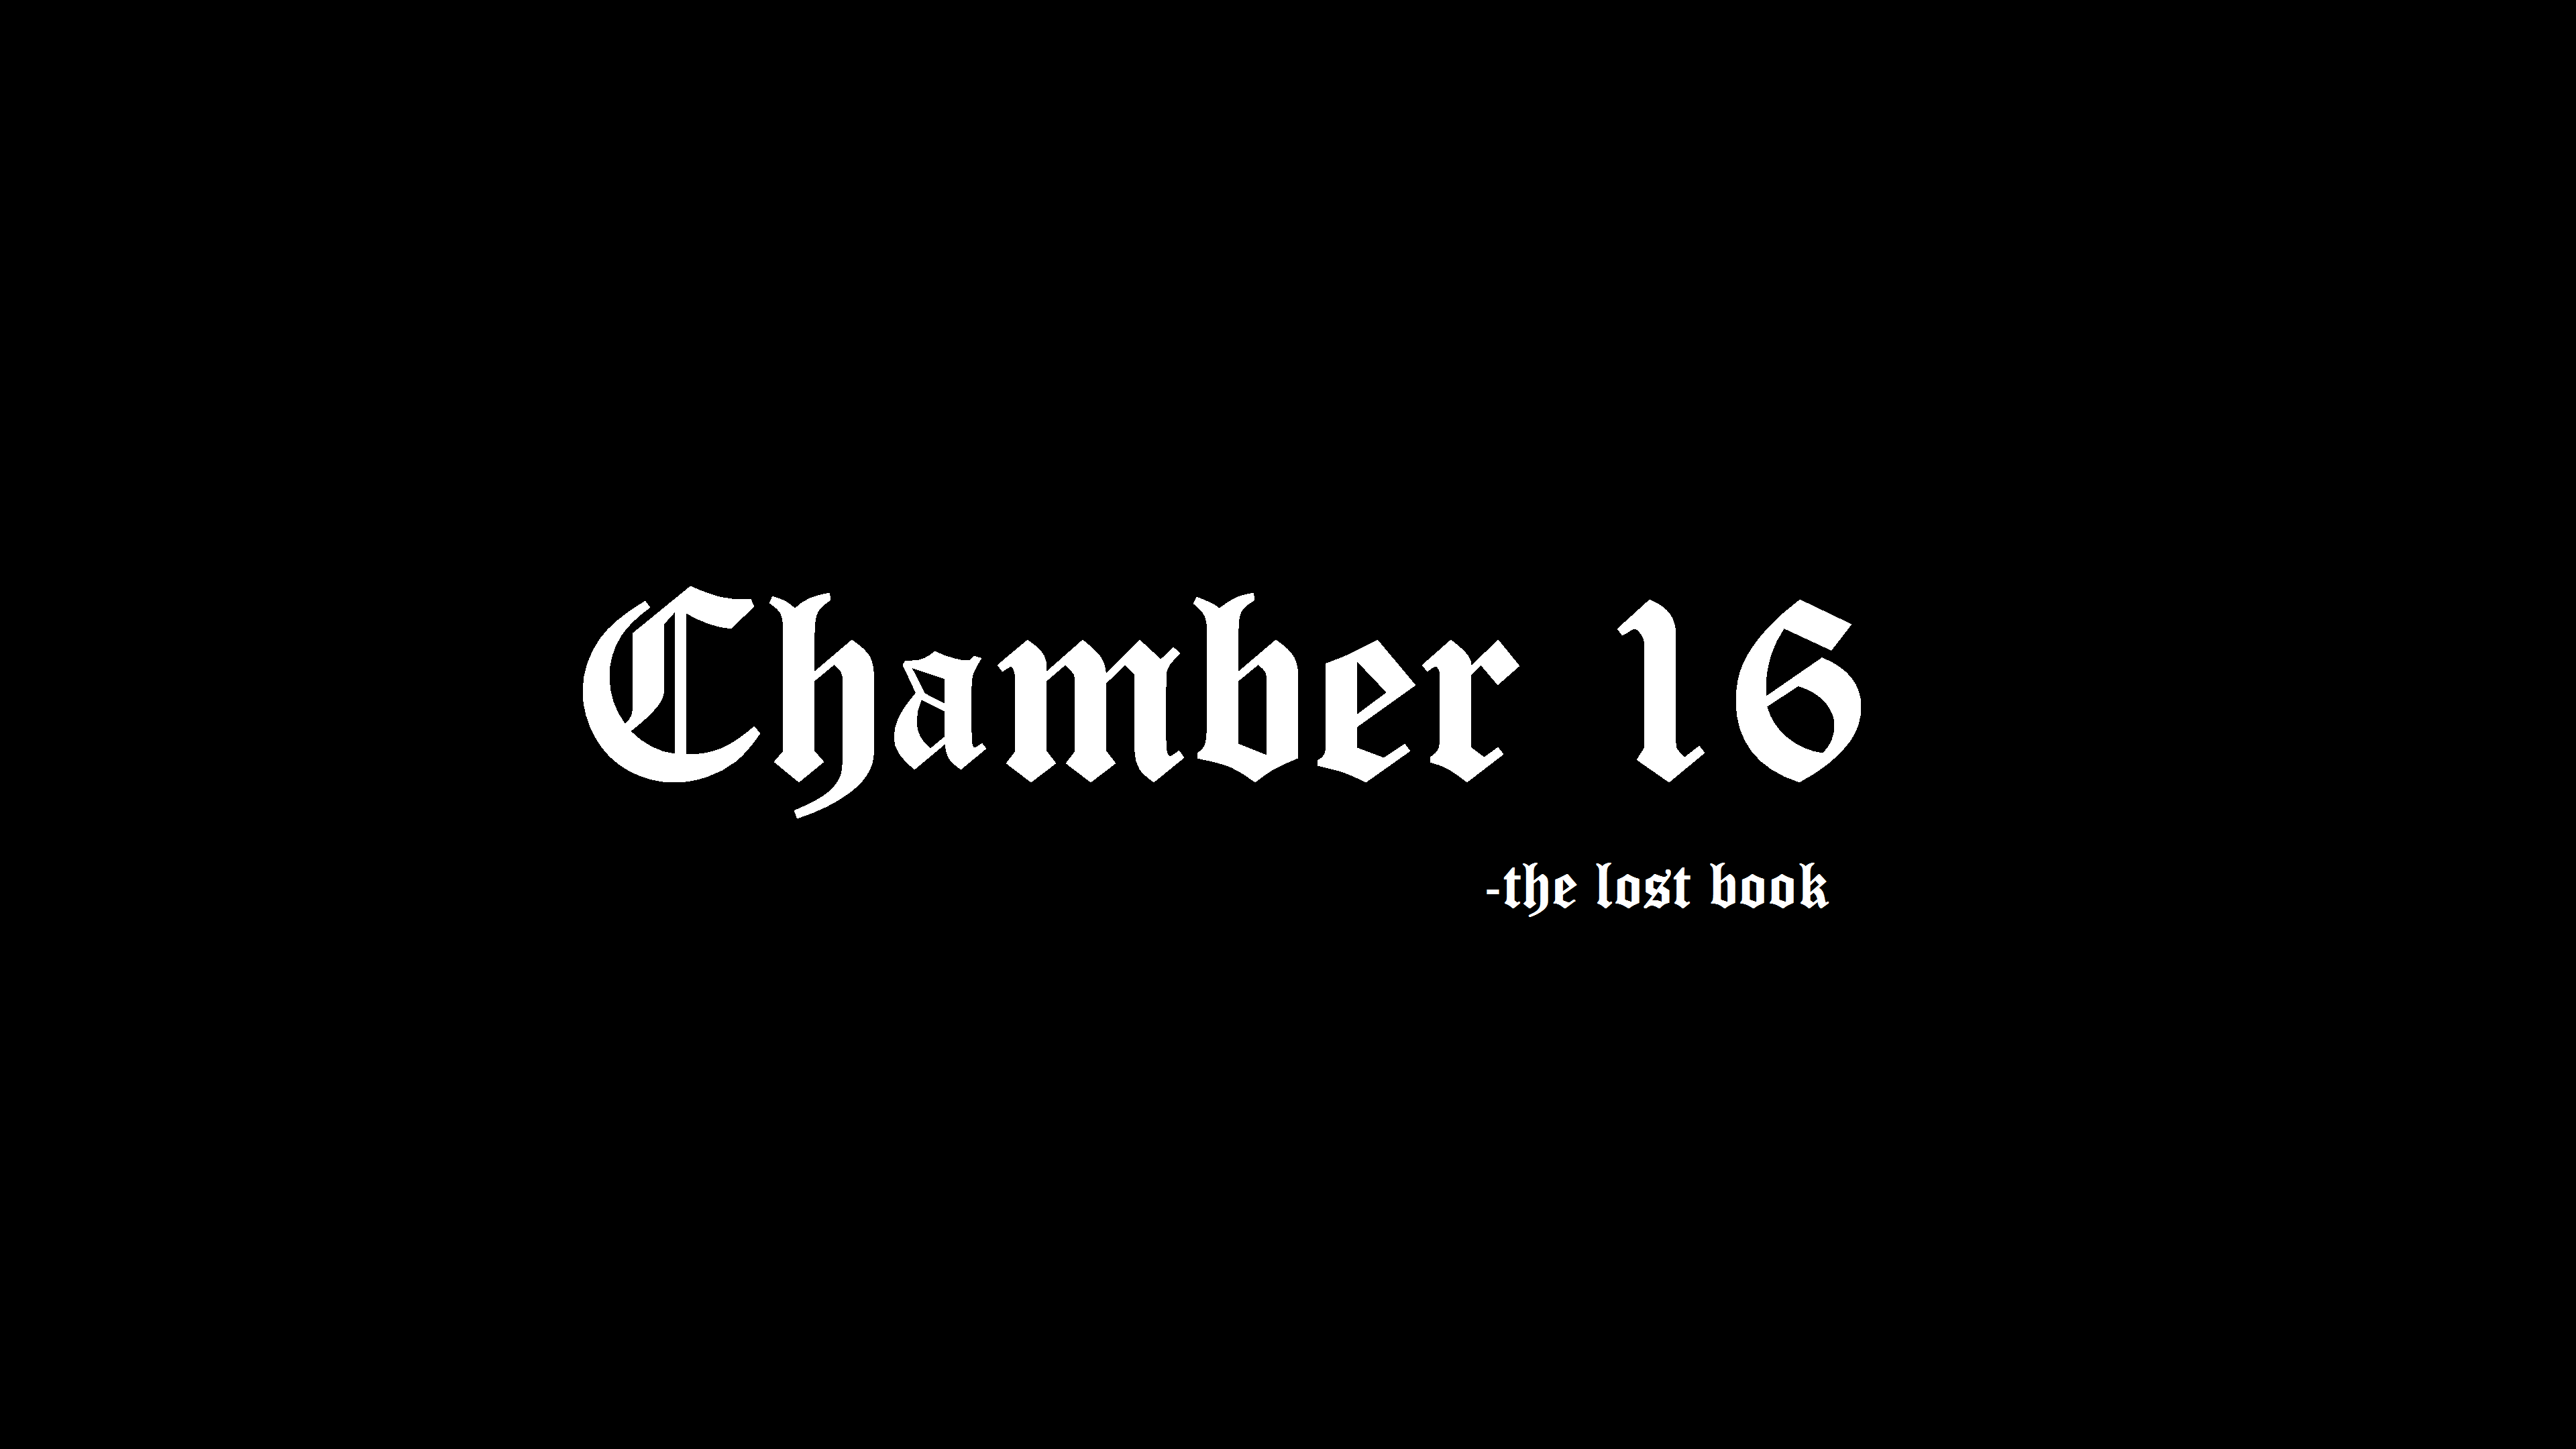 Chamber 16 Free volume